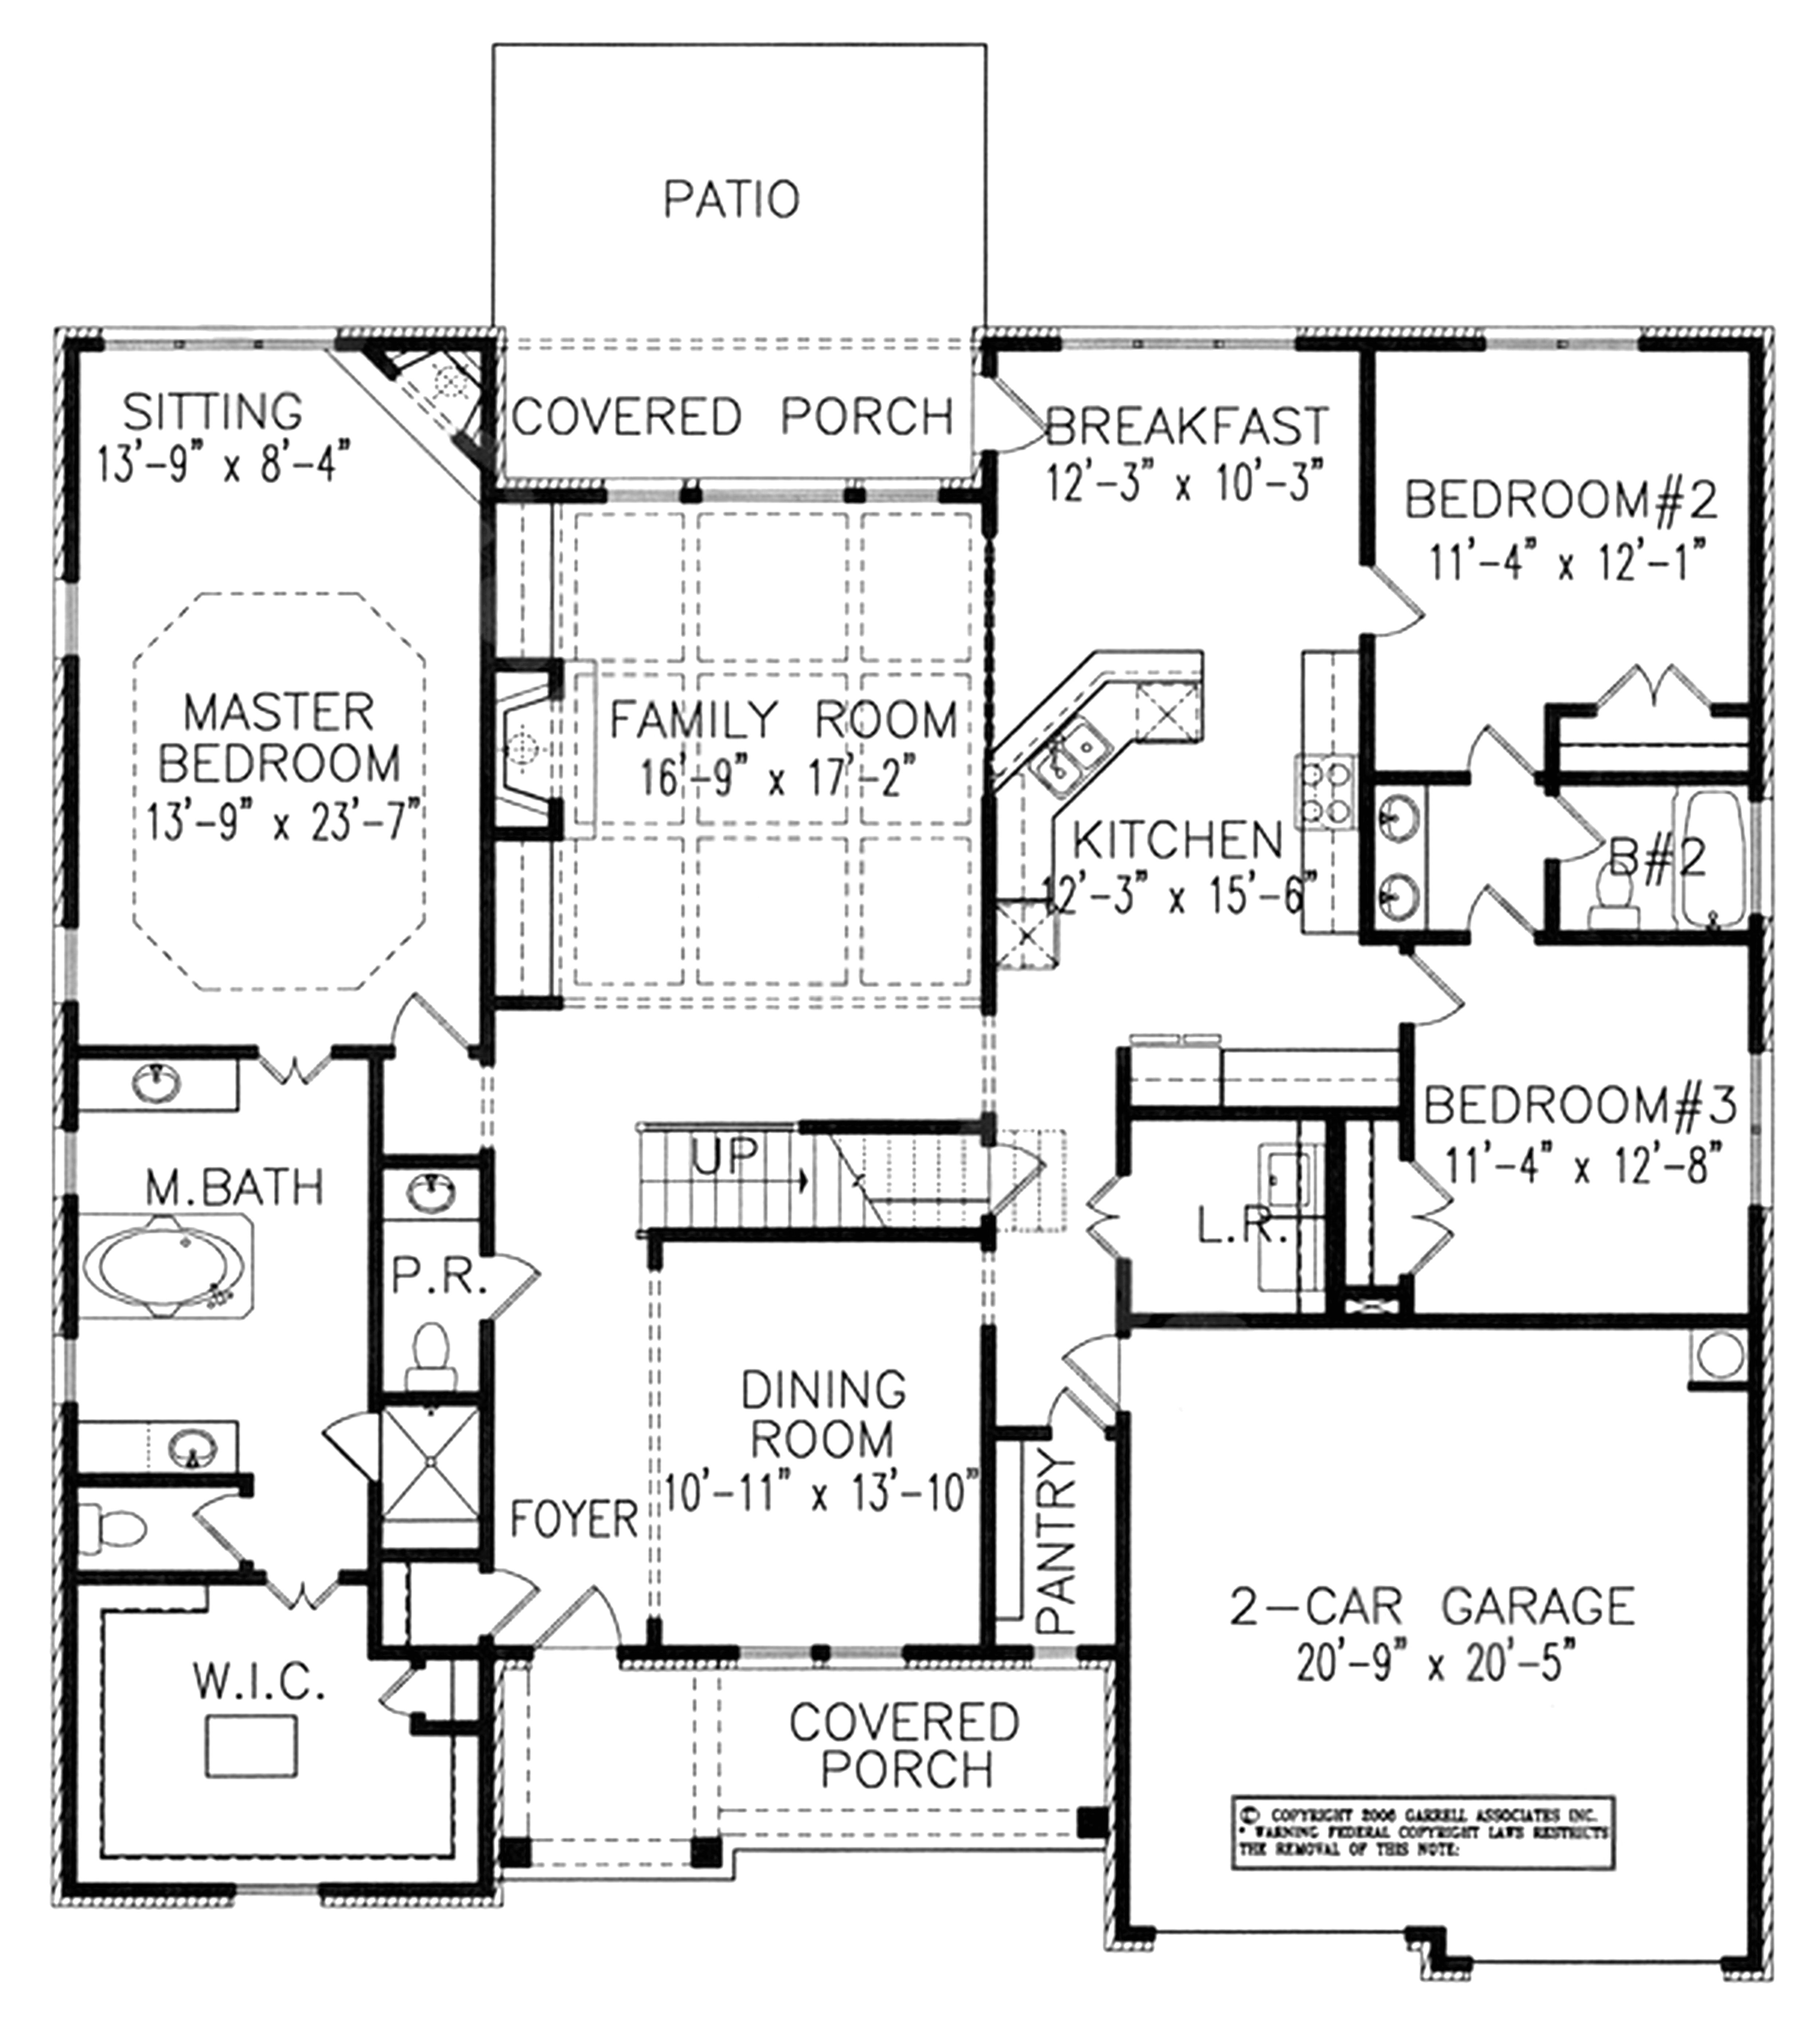 nohl crest homes floor plans elegant nohl crest homes floor plans best 50 awesome skogman homes floor